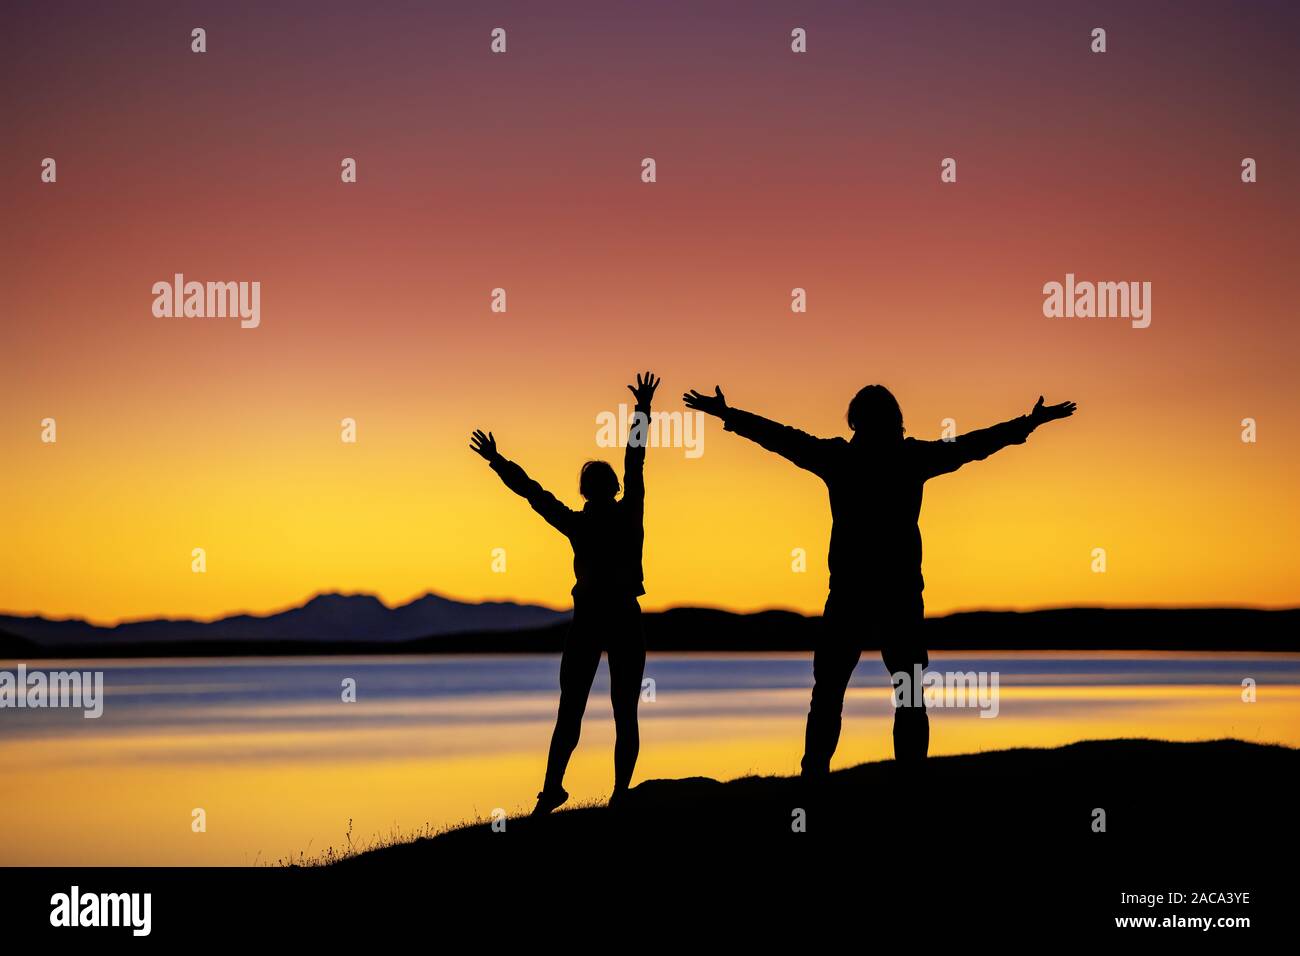 Silhouetten von zwei Wanderer steht in Sieger pose mit erhobenen Armen gegen Sonnenuntergang See und Berge Stockfoto